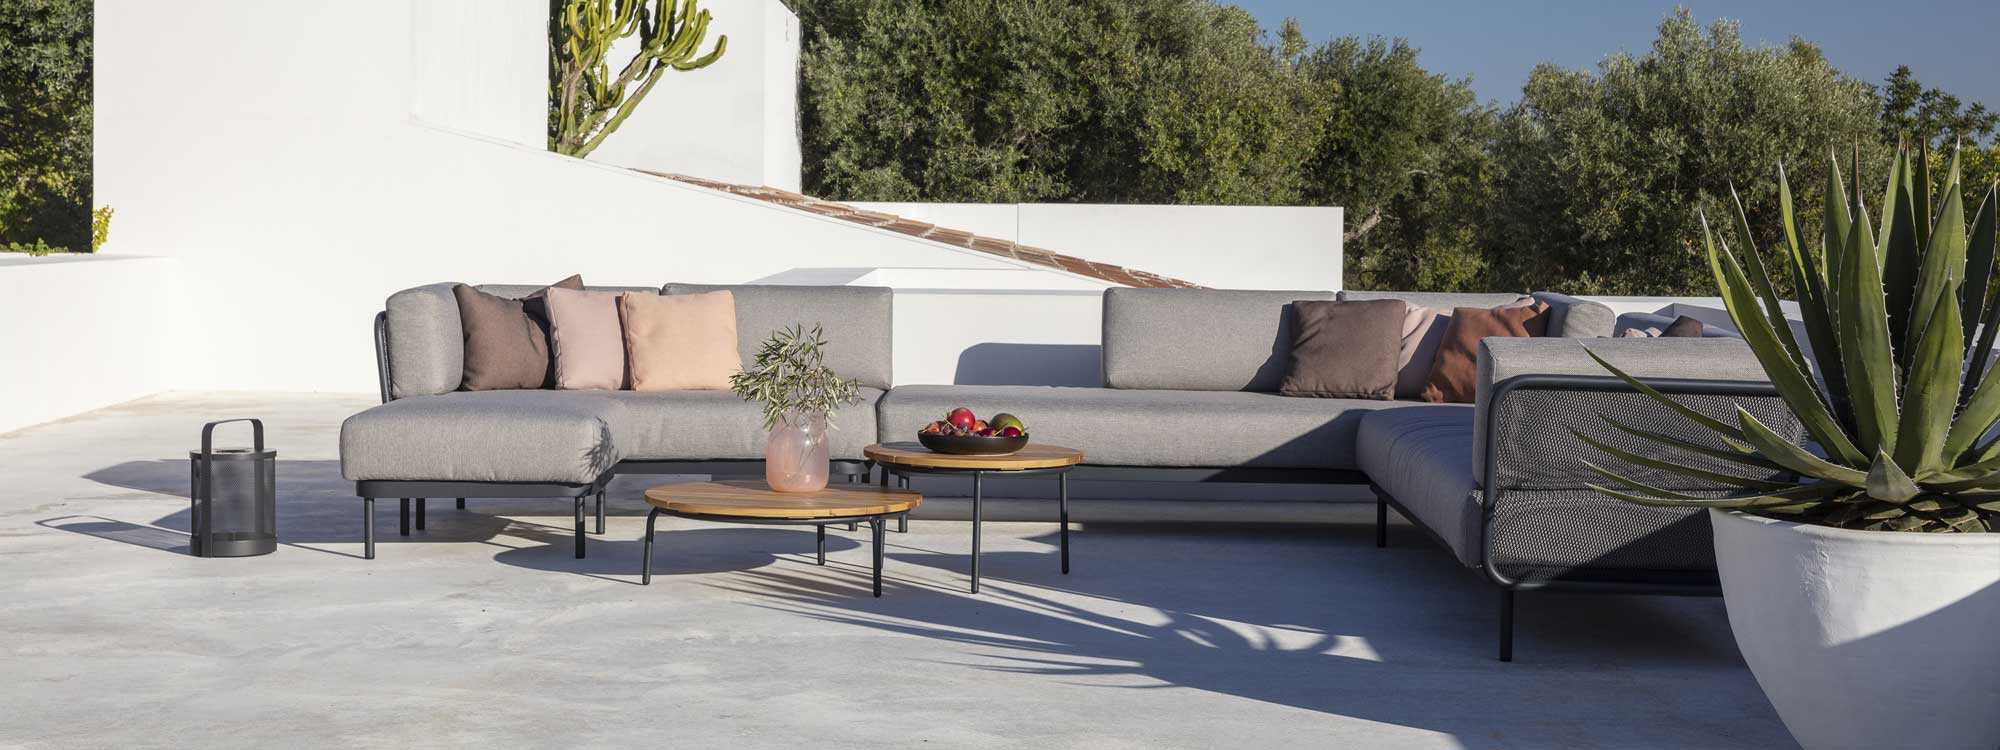 Image of Baza large garden corner sofa on whitewashed sunny terrace